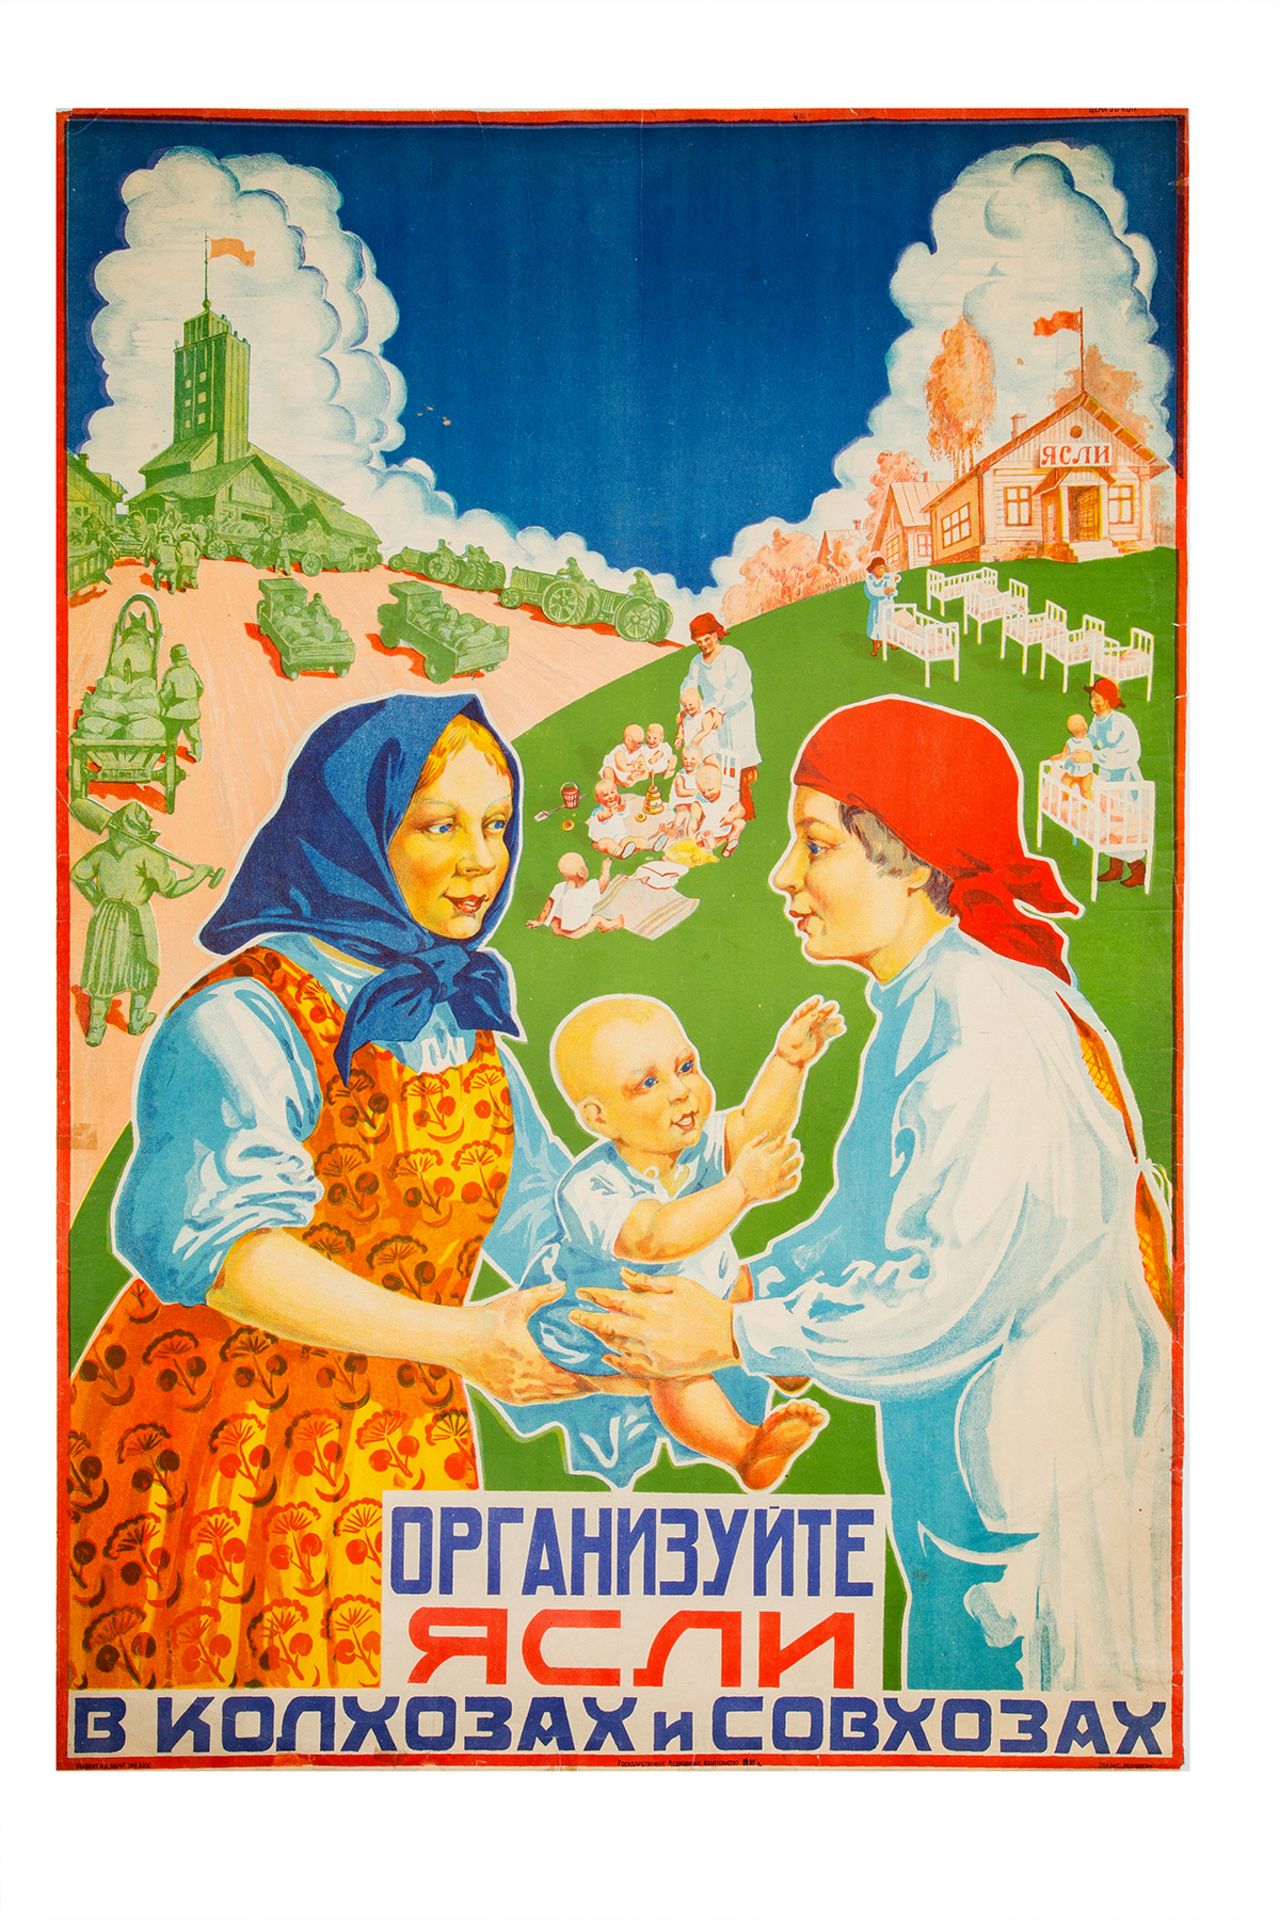 [Soviet] Poster â€œOrganize nursery in kolkhozes and sovkhozesâ€. â€“ Moscow, 1930.; 102,2x96,5 cm.